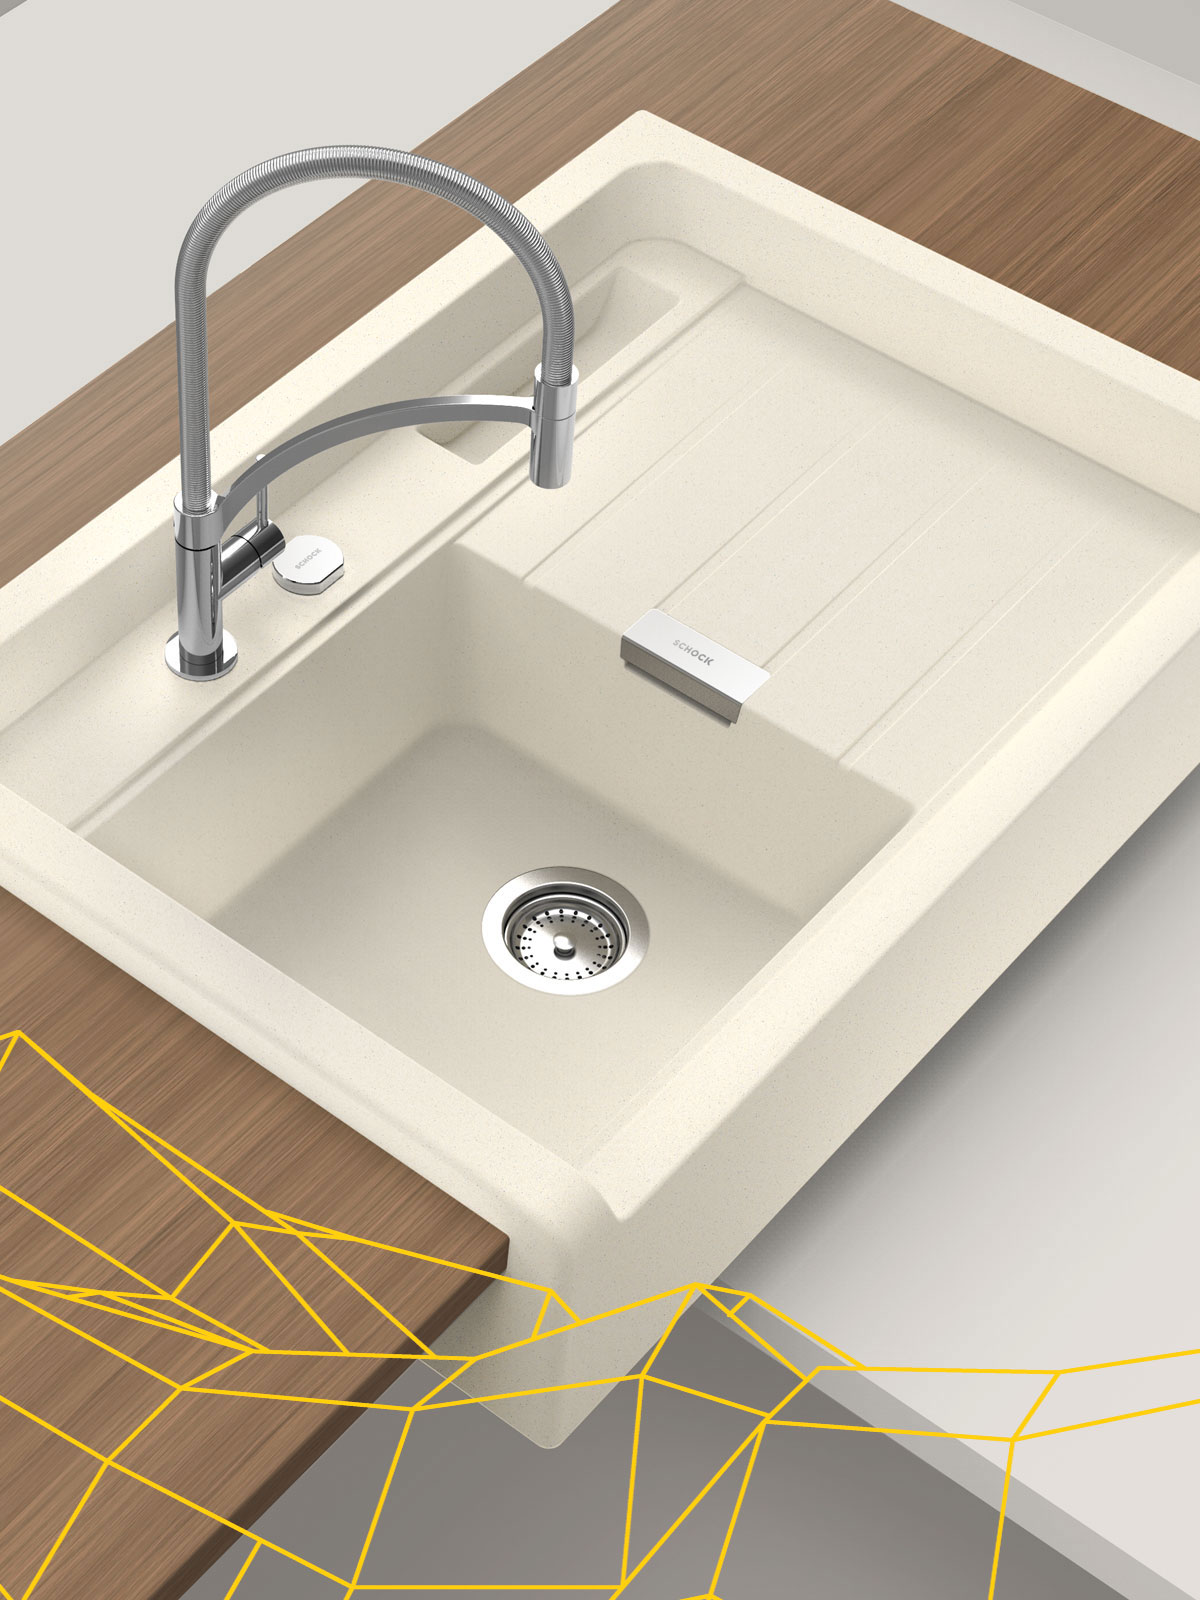 Modular kitchen sink